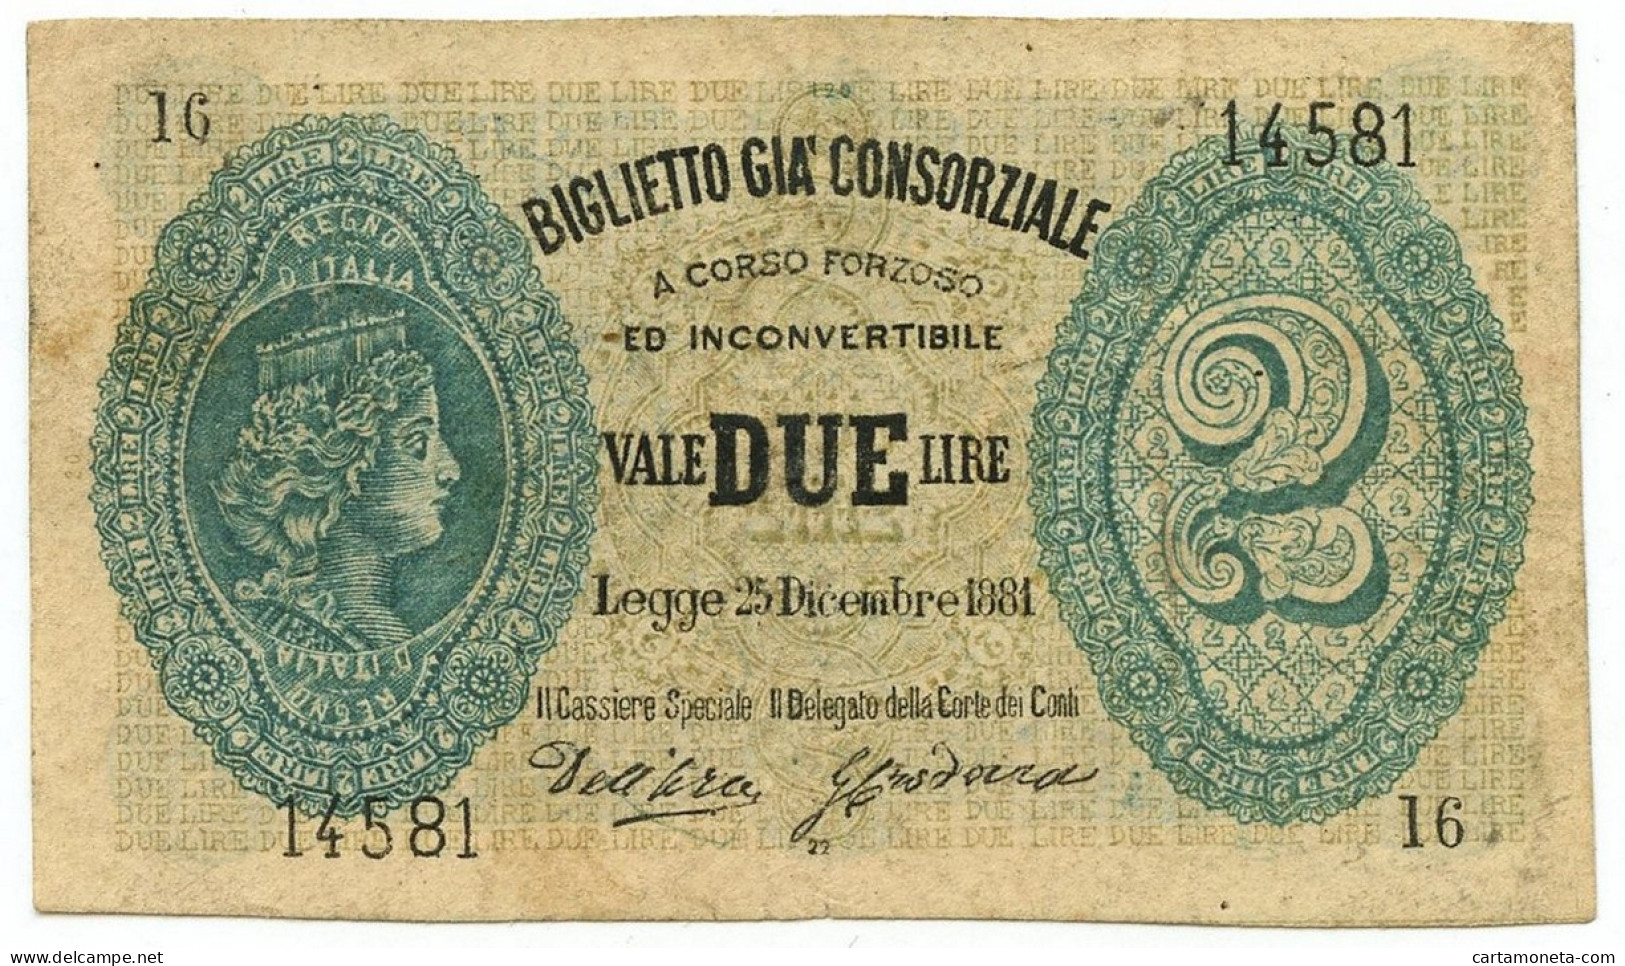 2 LIRE FALSO D'EPOCA BIGLIETTO GIÀ CONSORZIALE REGNO D'ITALIA 25/12/1881 BB - [ 8] Specimen